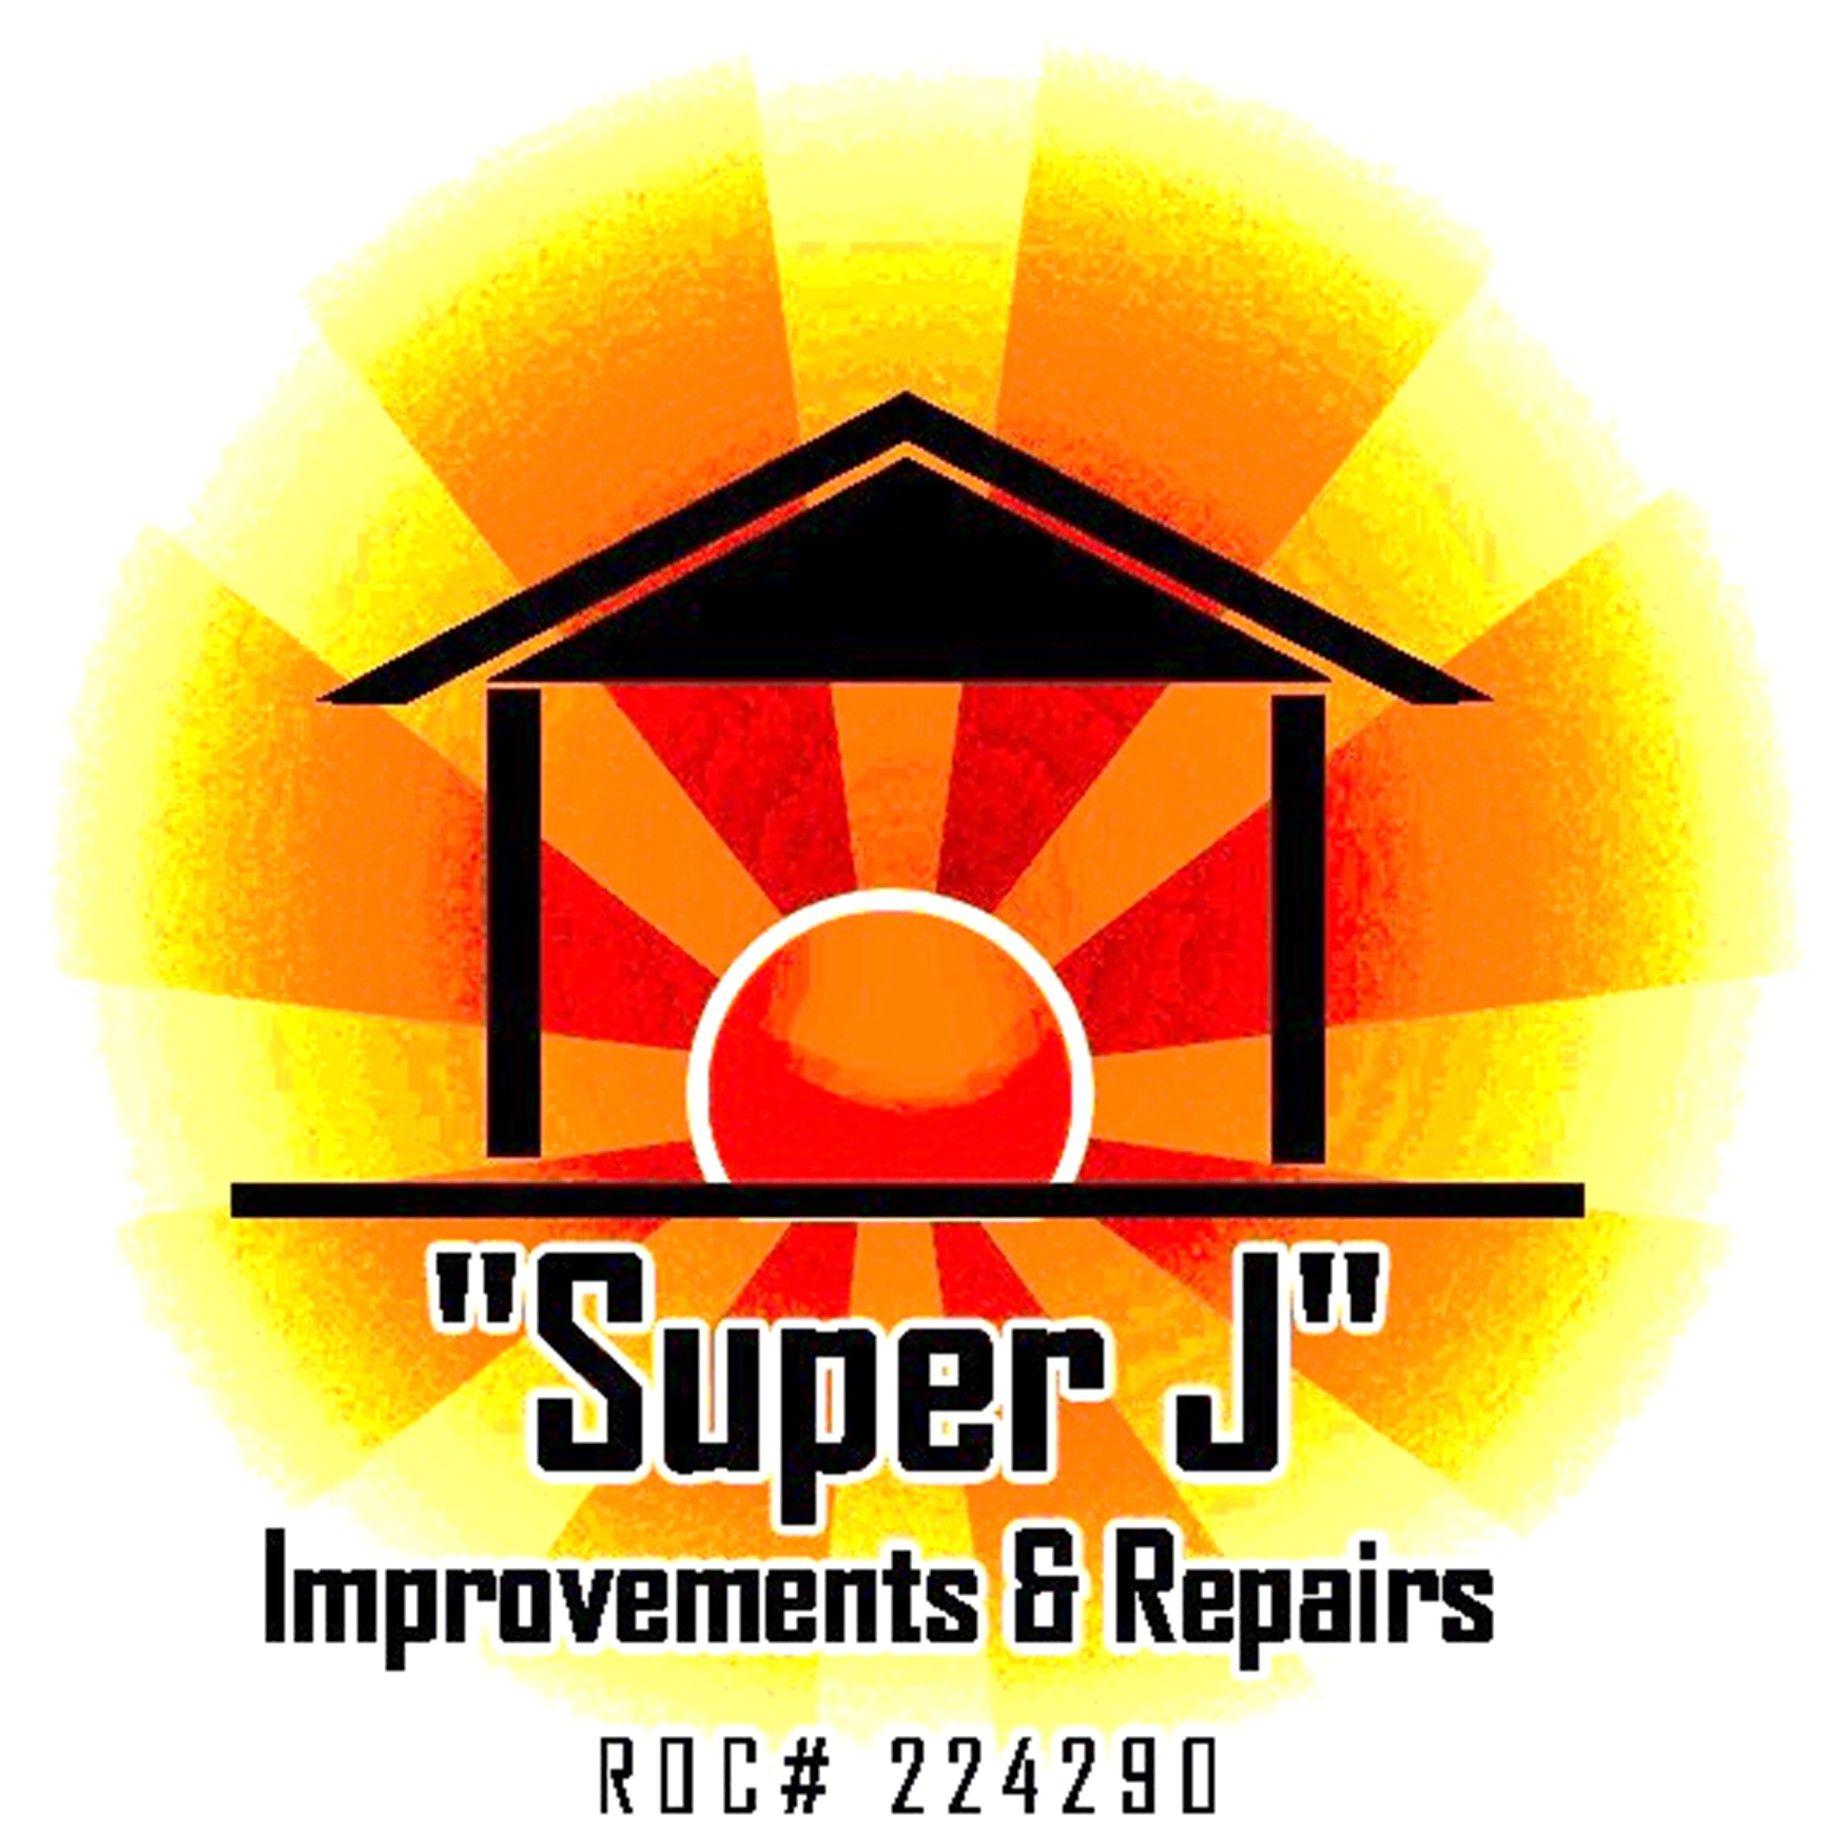 Super J Logo - Super J